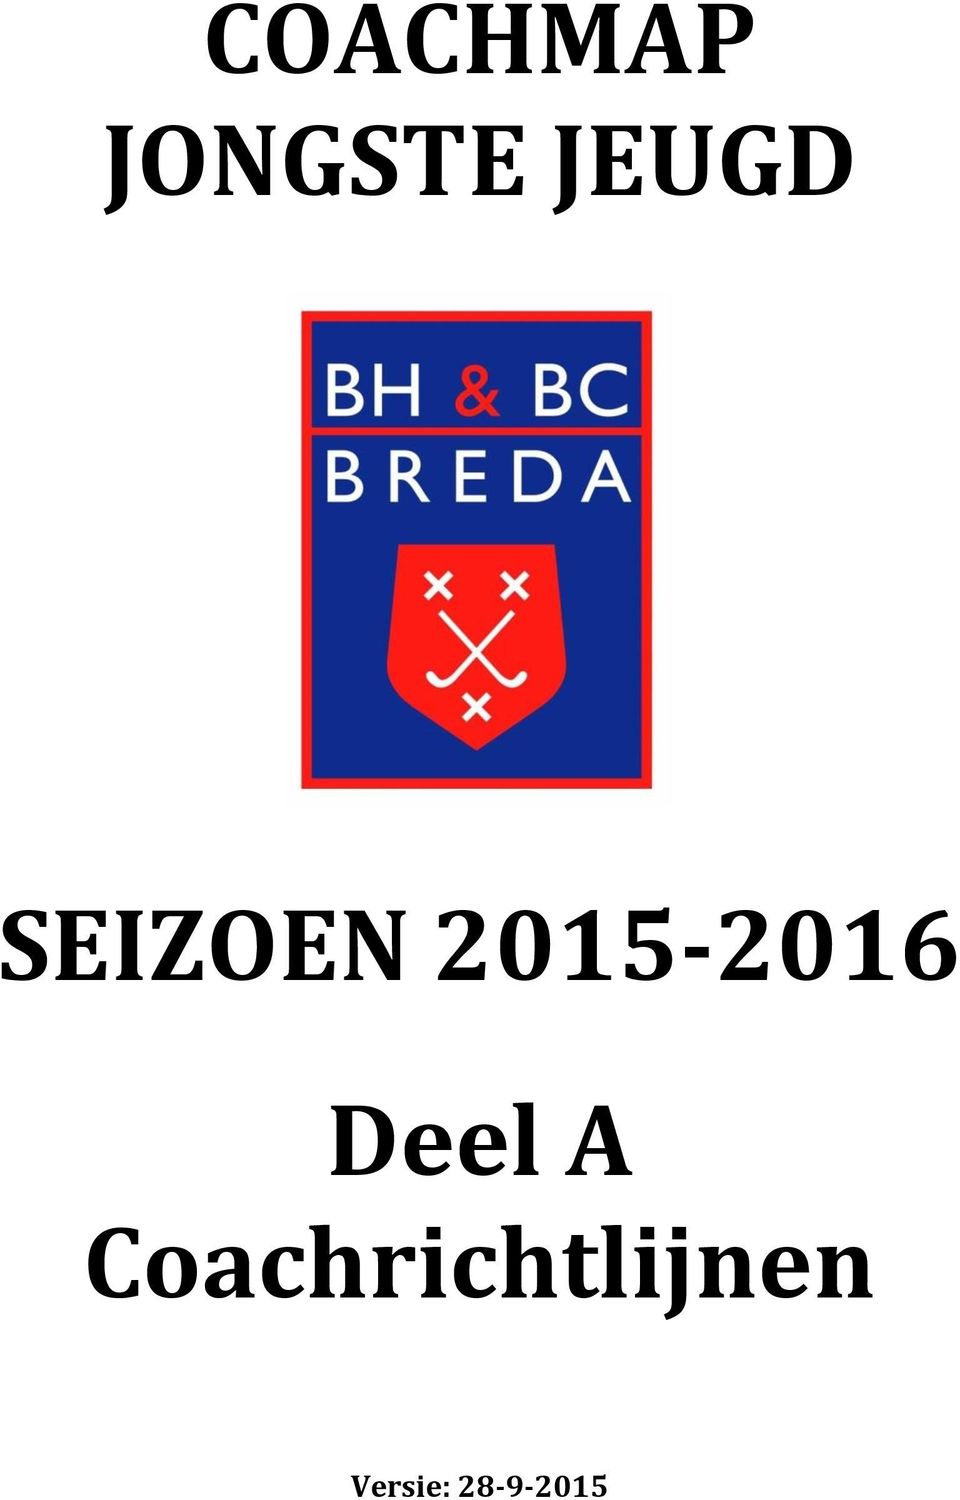 2015-2016 Deel A